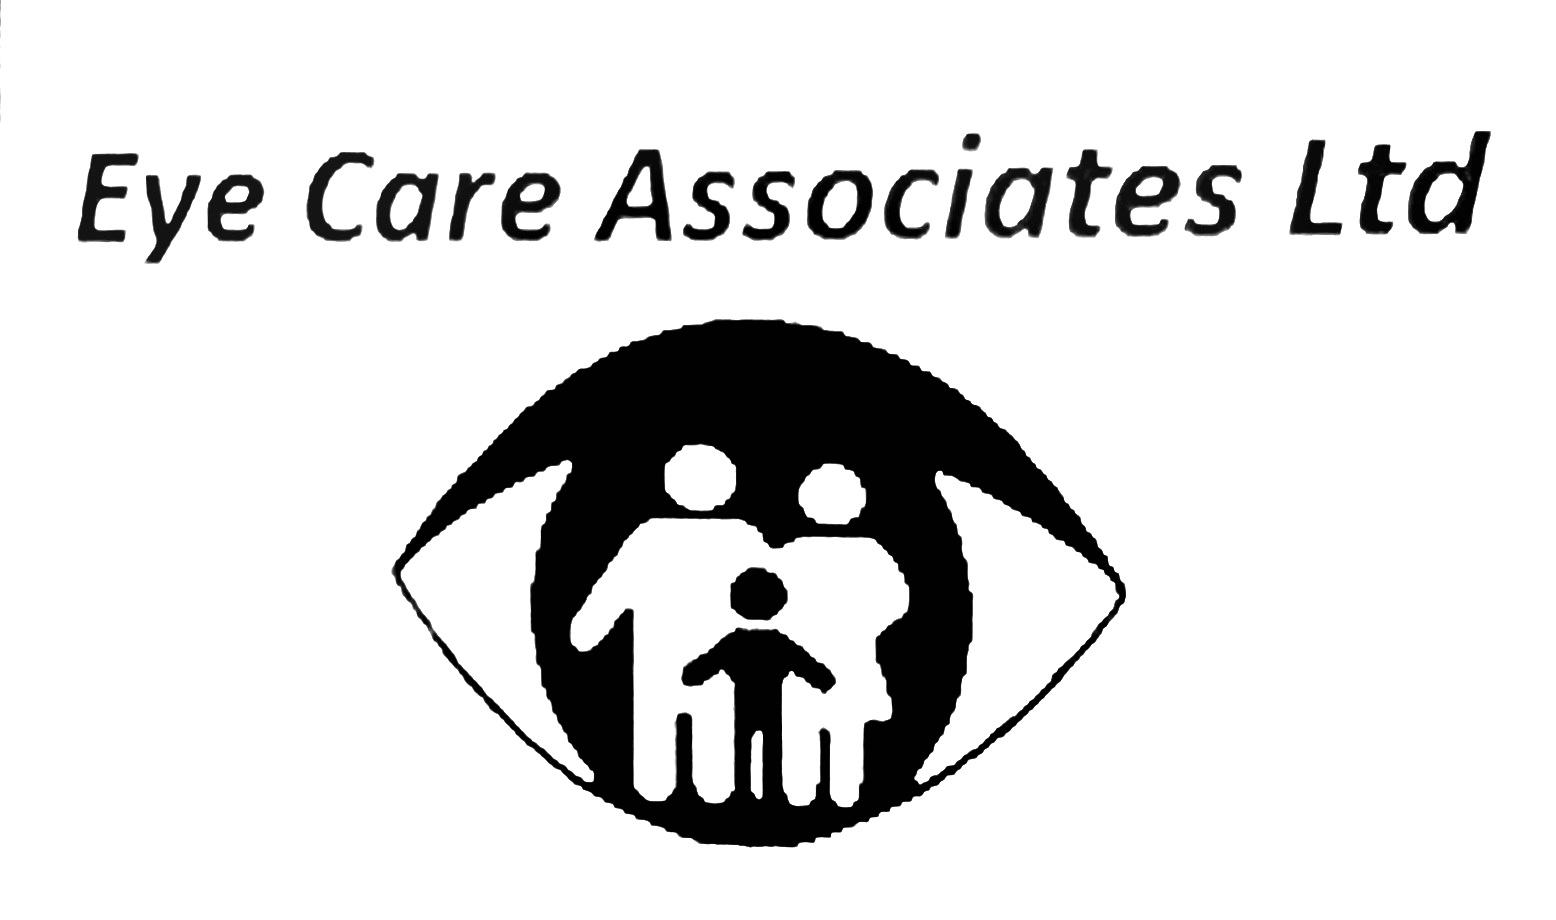 Eye Care Associates Logo